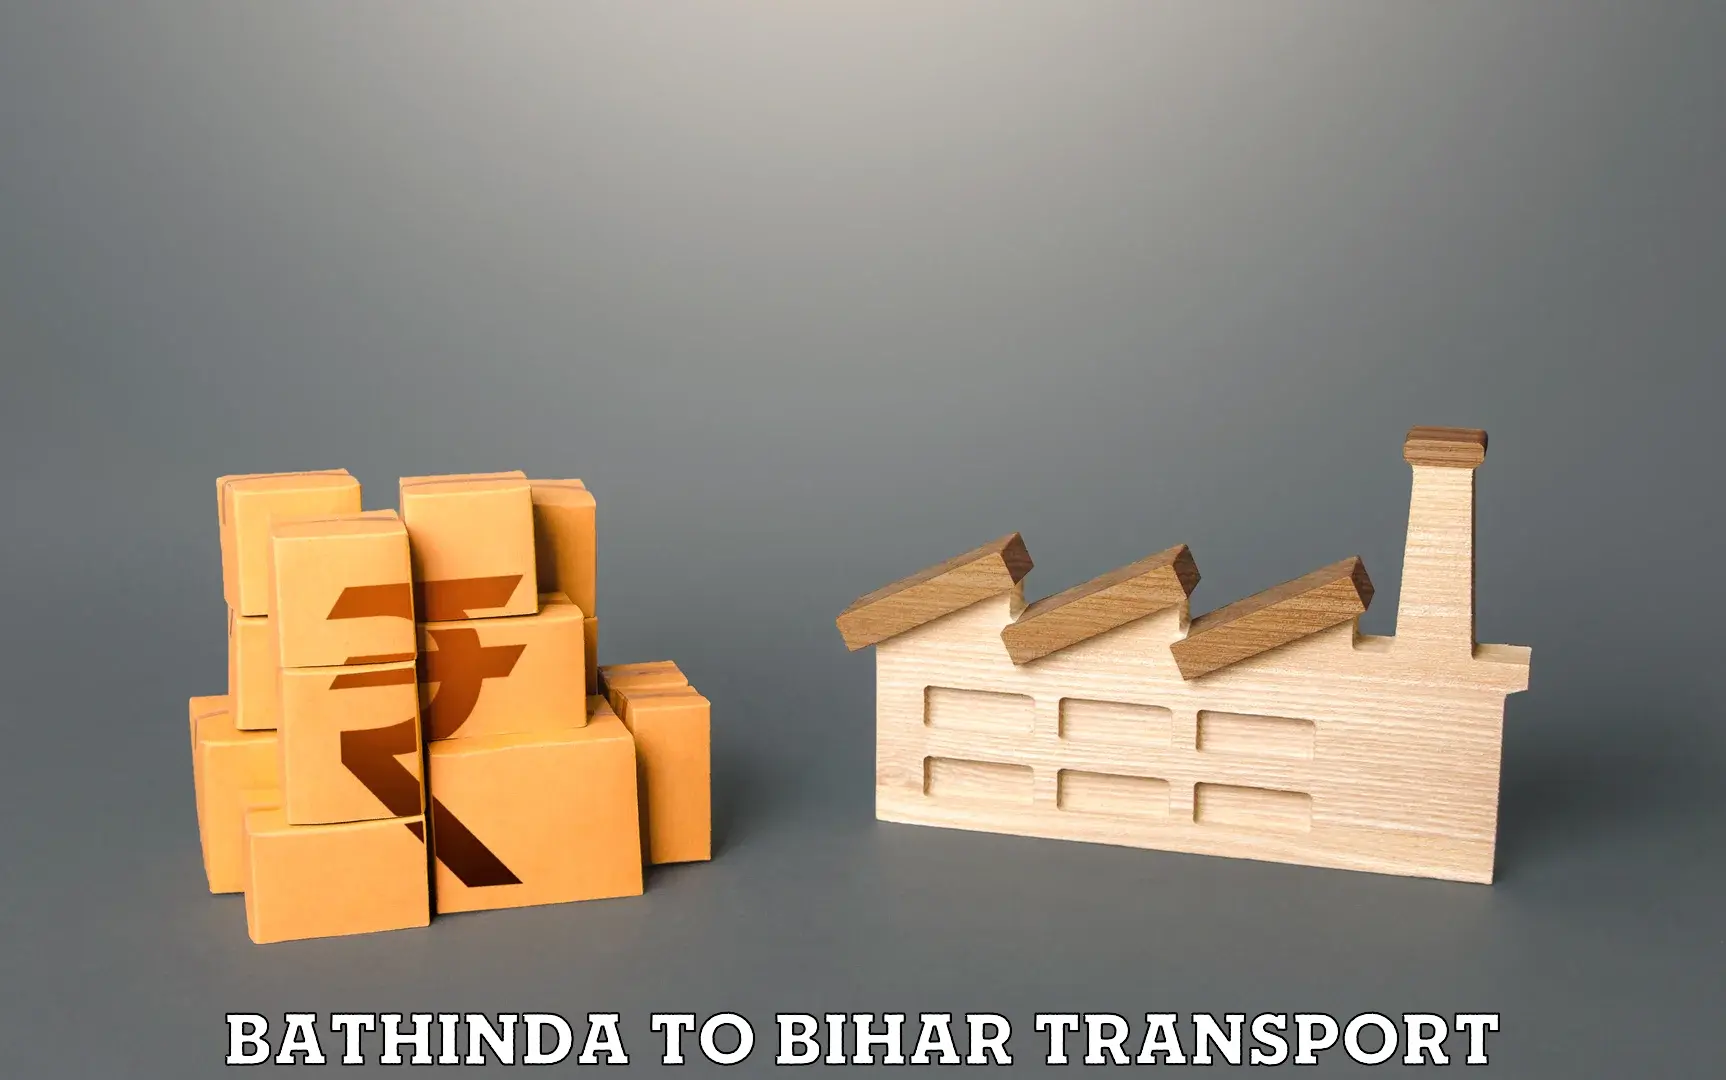 Furniture transport service Bathinda to Bhabua